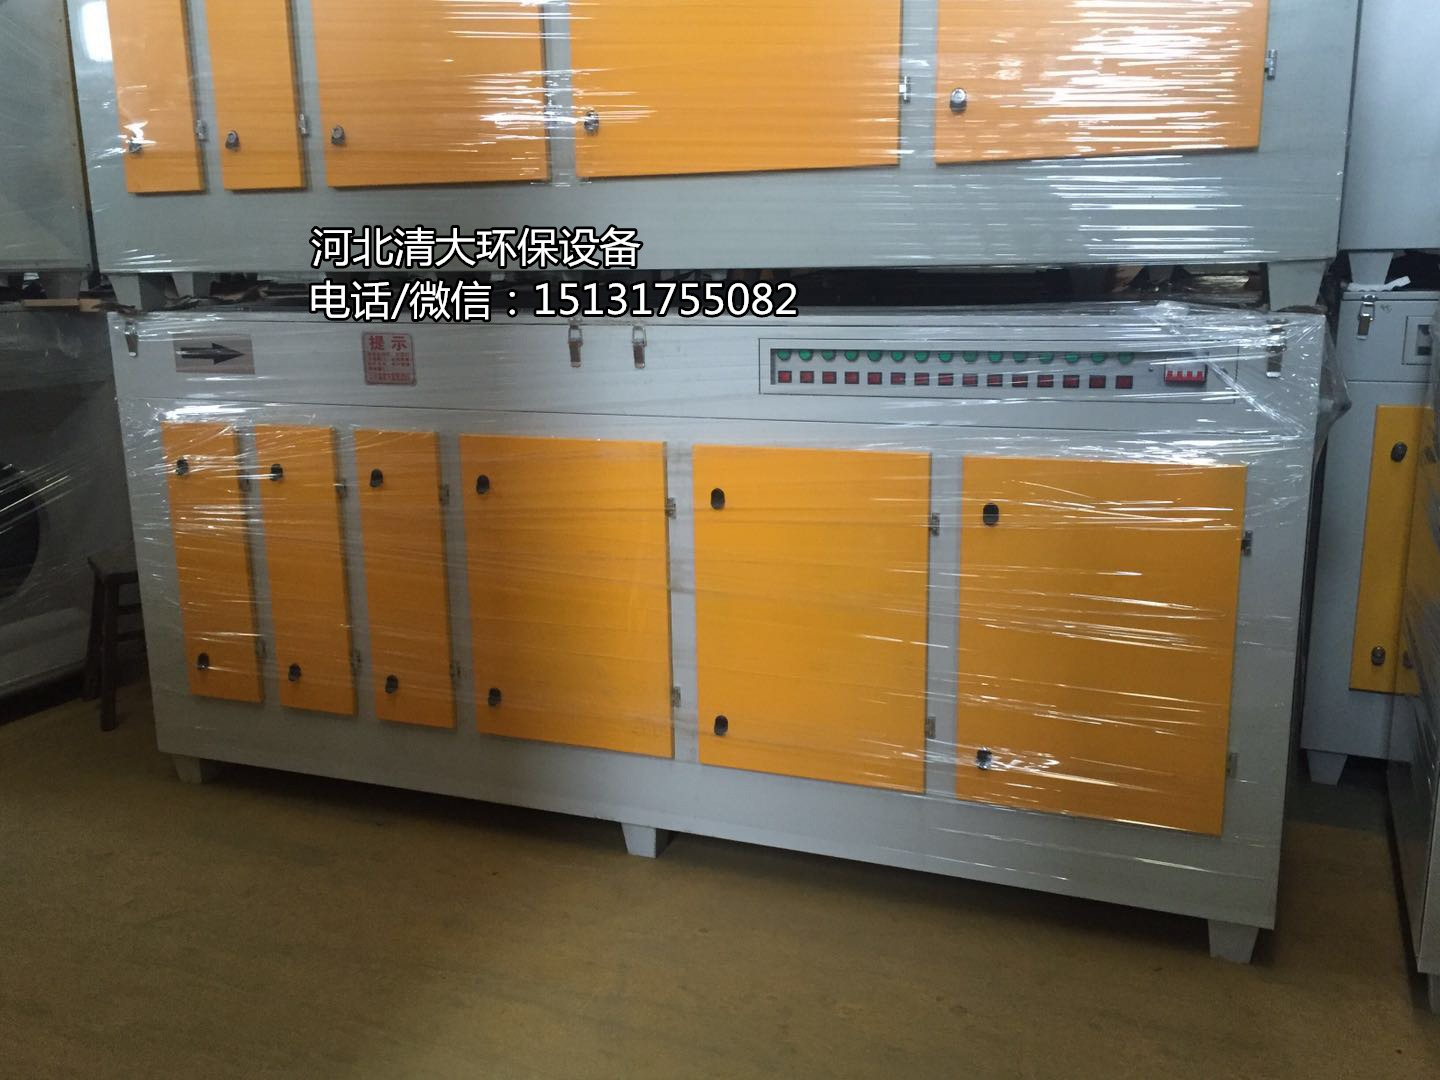 北京工业催化废气处理设备光氧催化除臭设备厂家